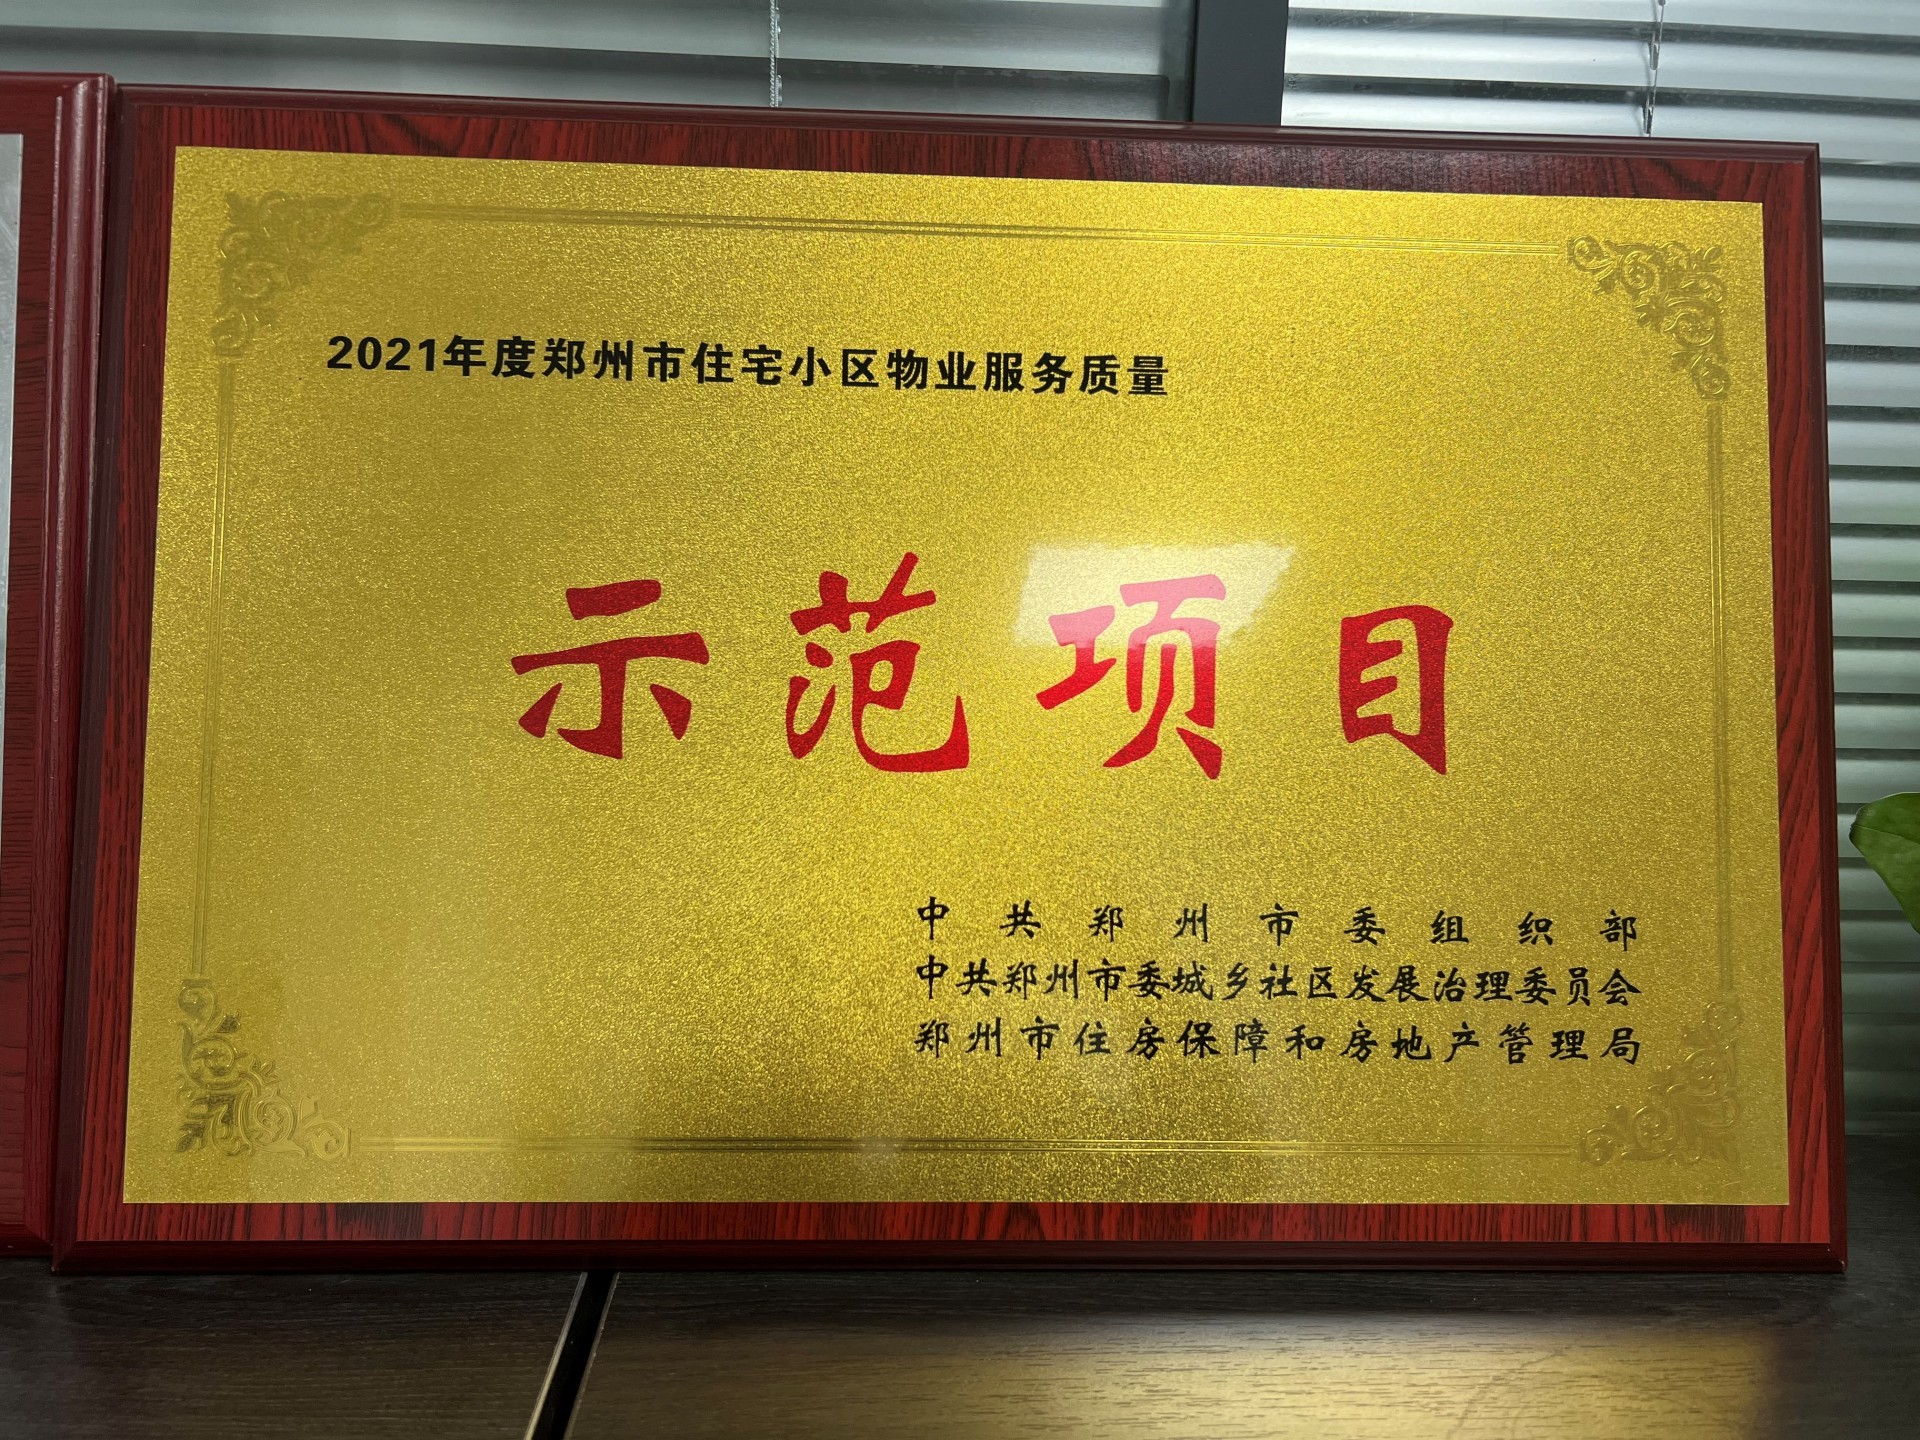 裕华满园荣获“2021年度郑州市住宅小区物业服务质量示范项目”